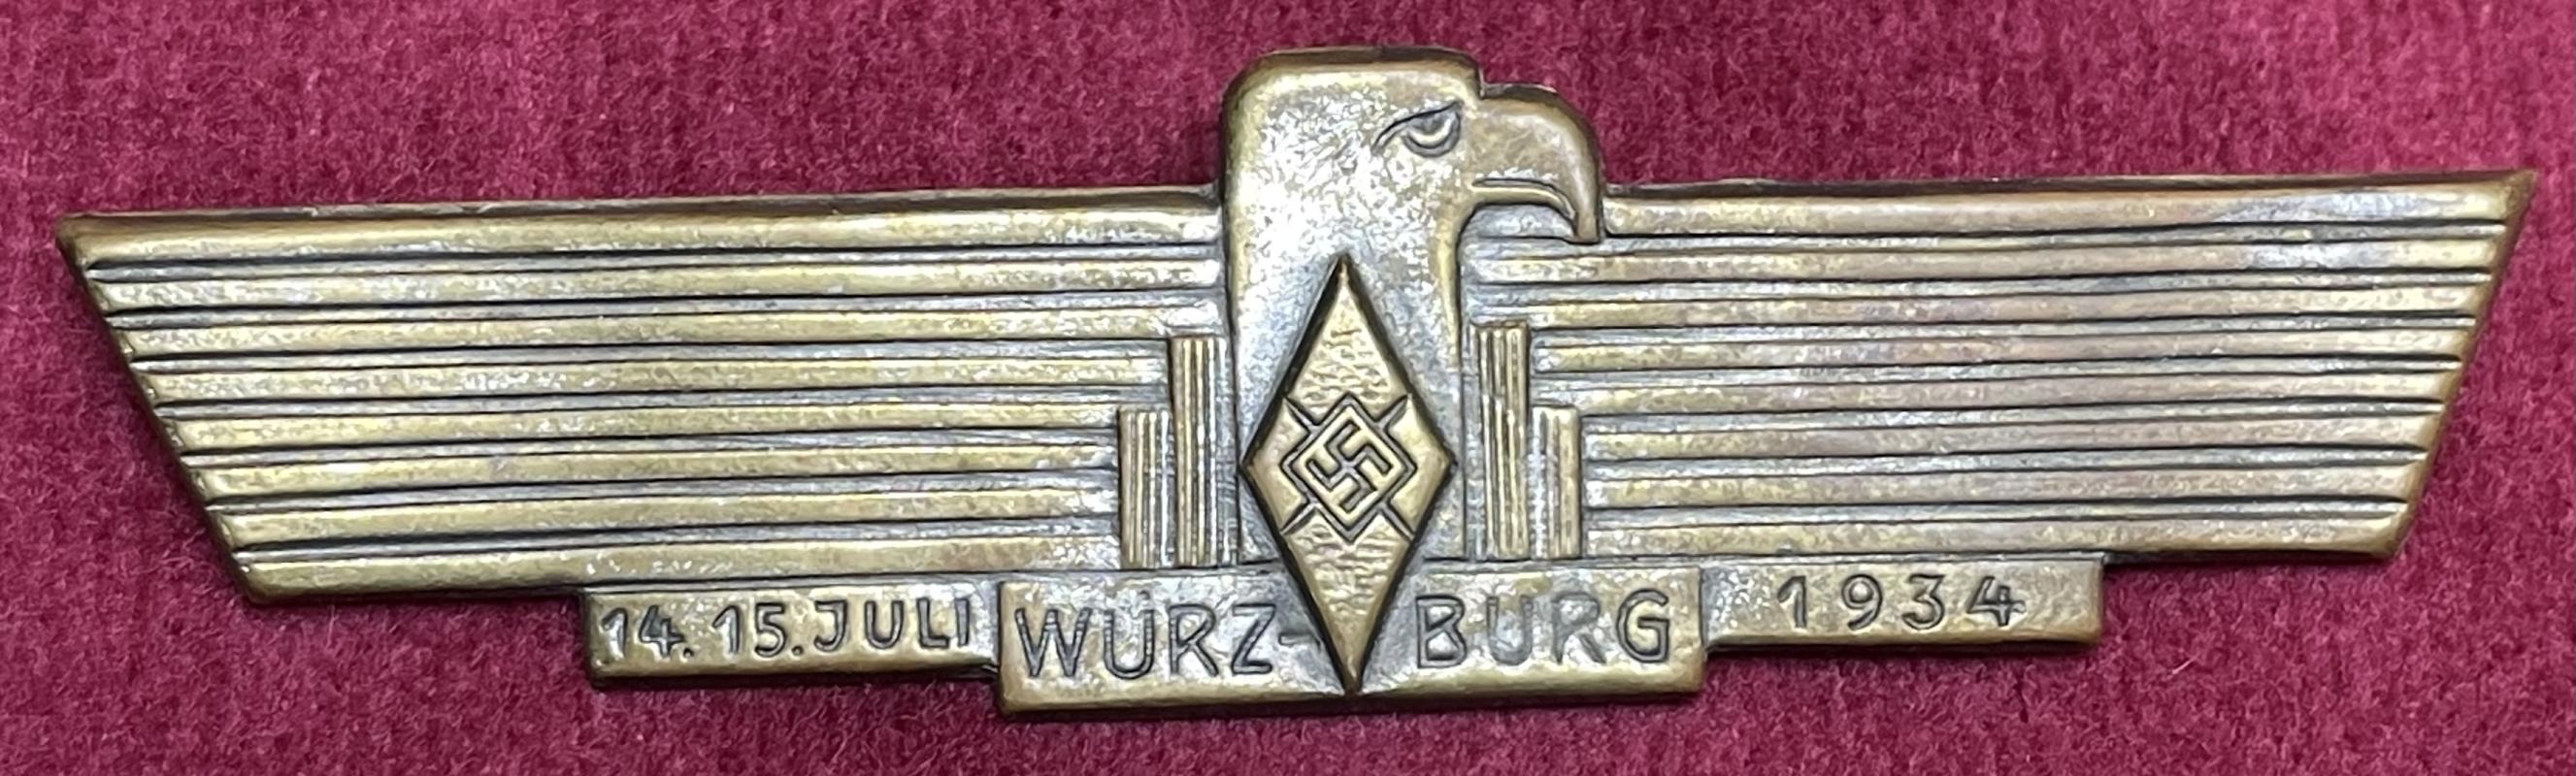 3rd Reich HJ Treffen in Würzburg 1934